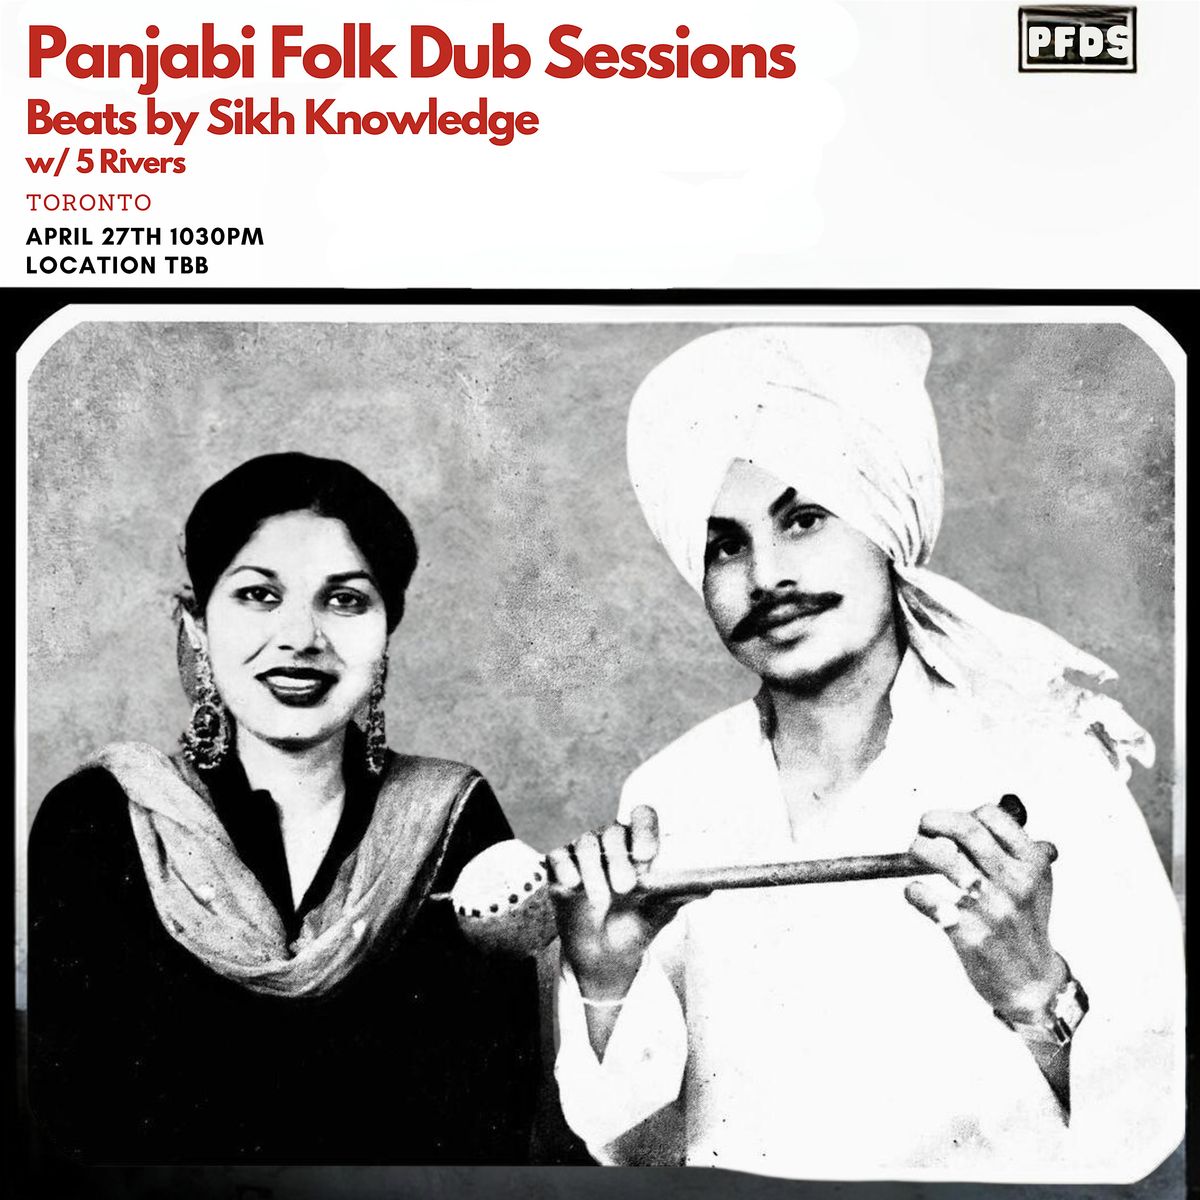 Panjabi Folk Dub Sessions  - April 2024